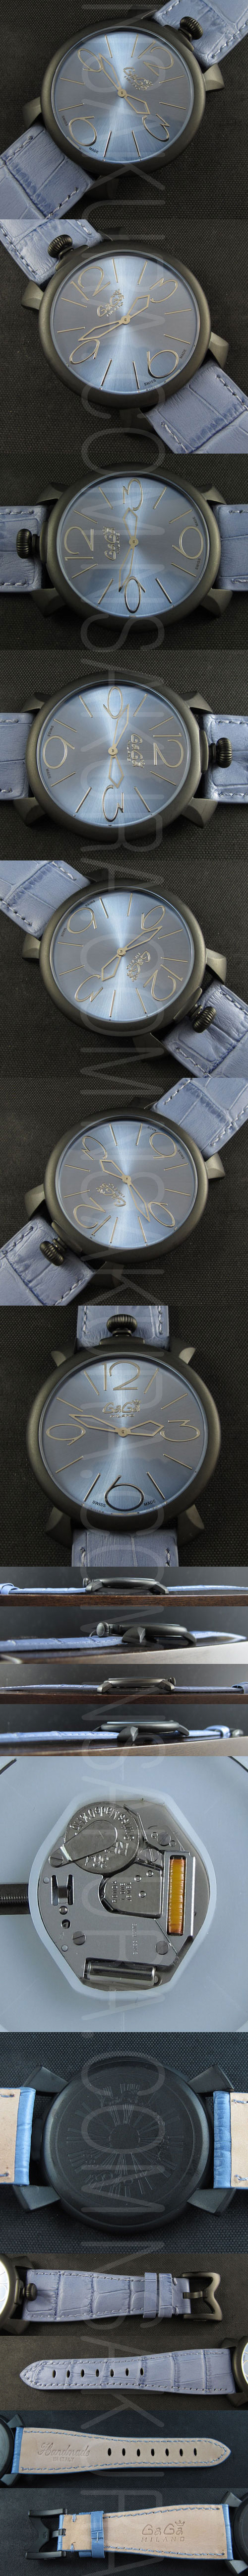 ガガミラノ腕時計の説明